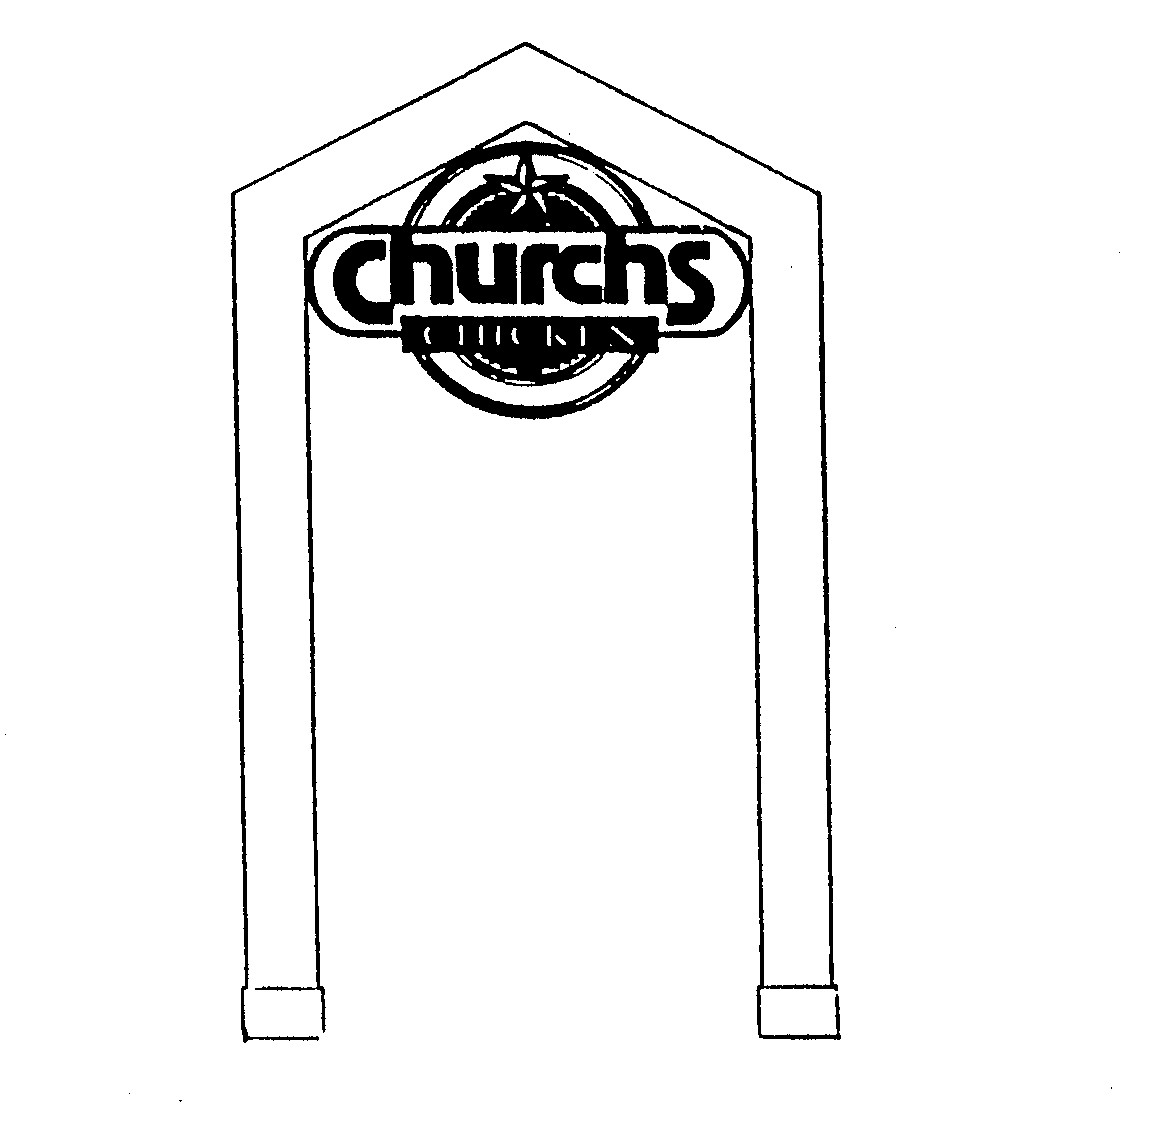  CHURCHS CHICKEN